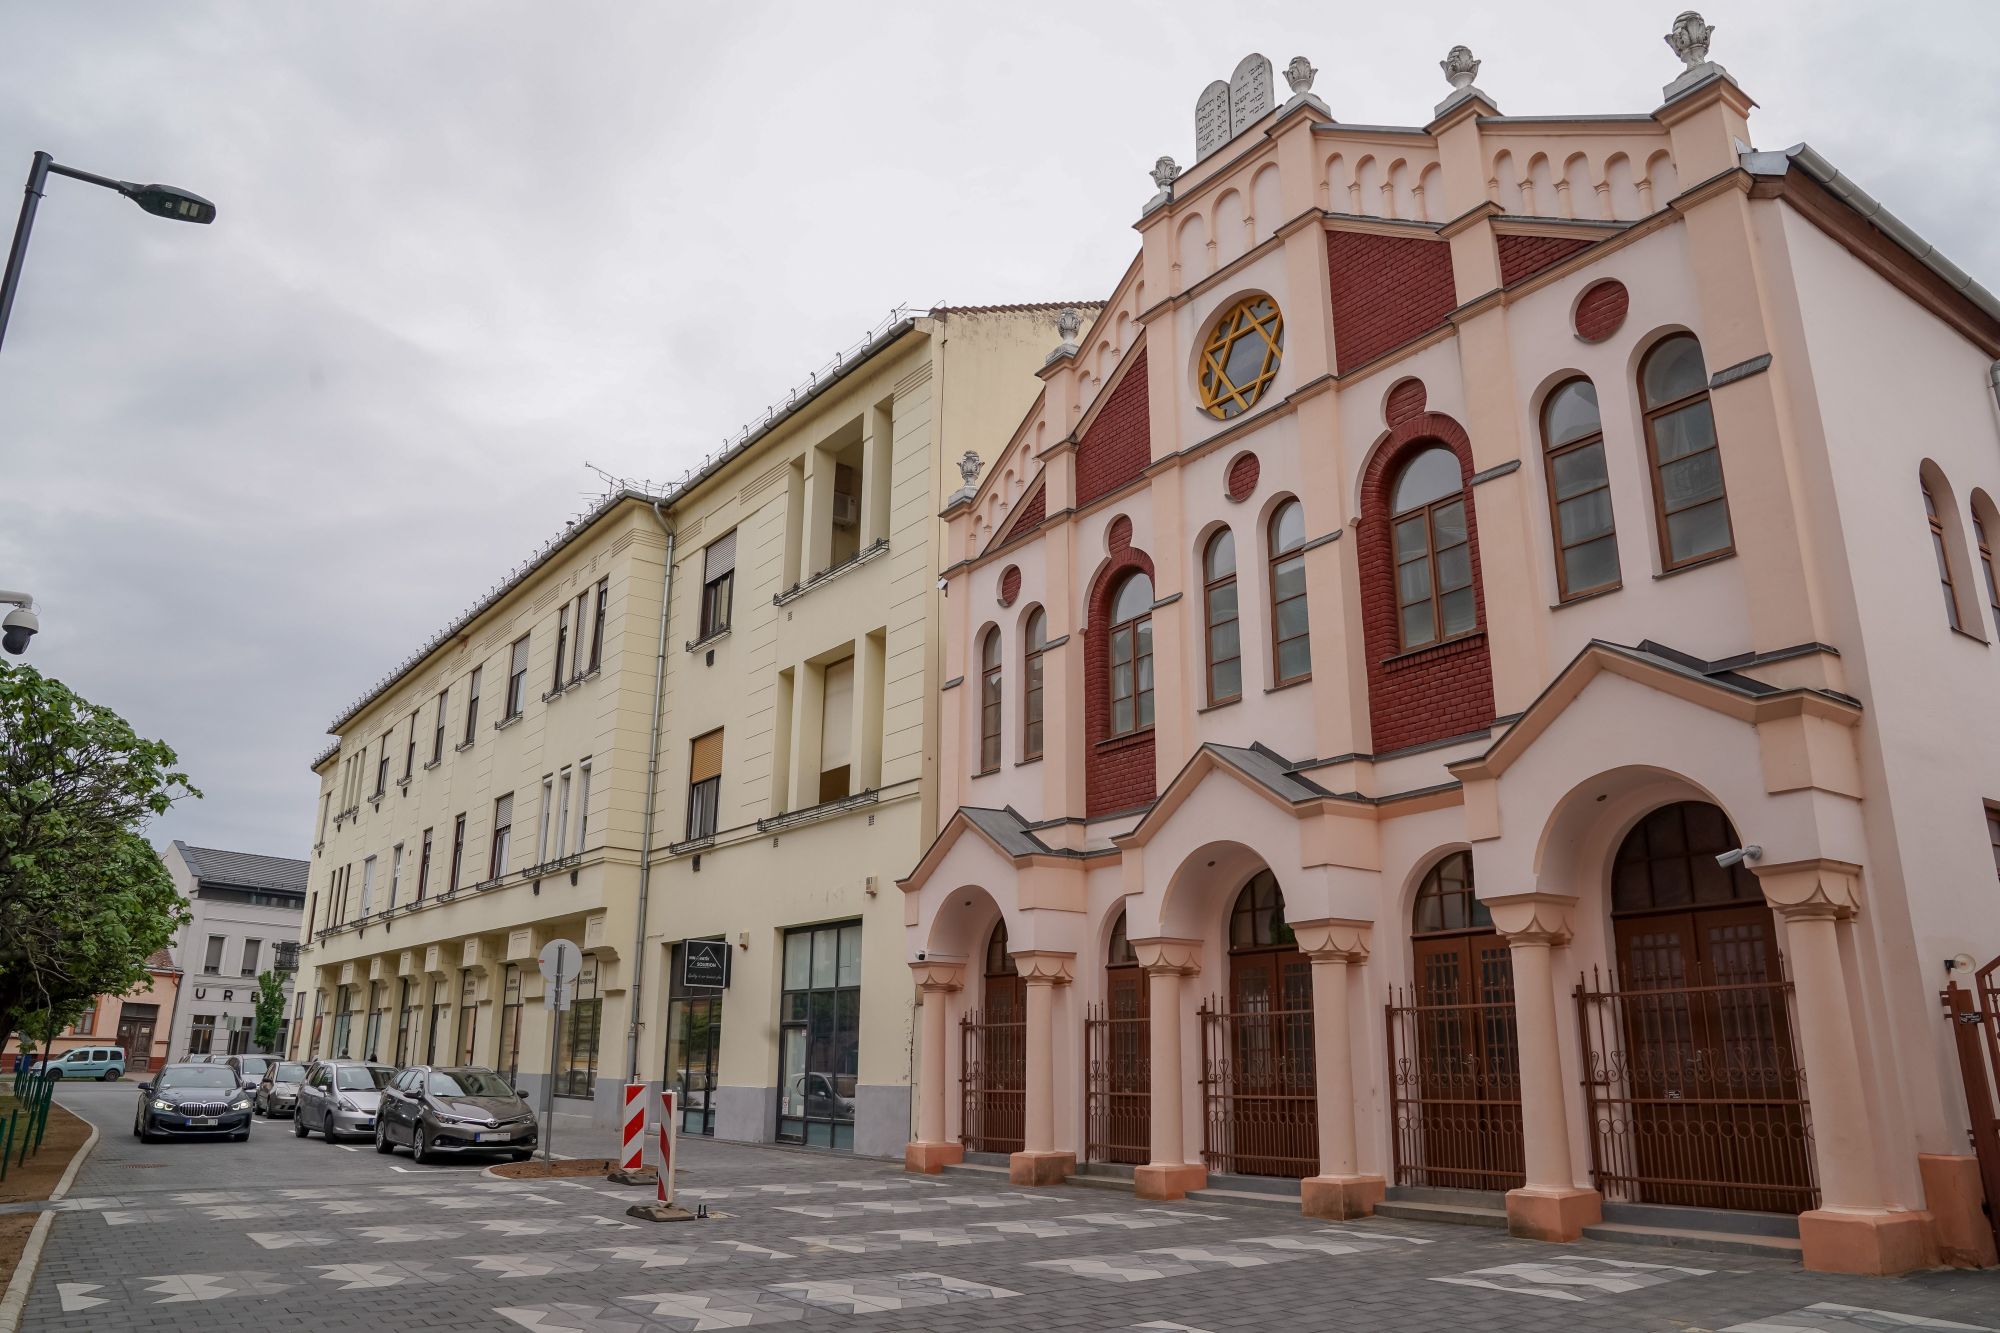 Rendbe szedték a belváros leghepehupásabb utcáját Debrecenben